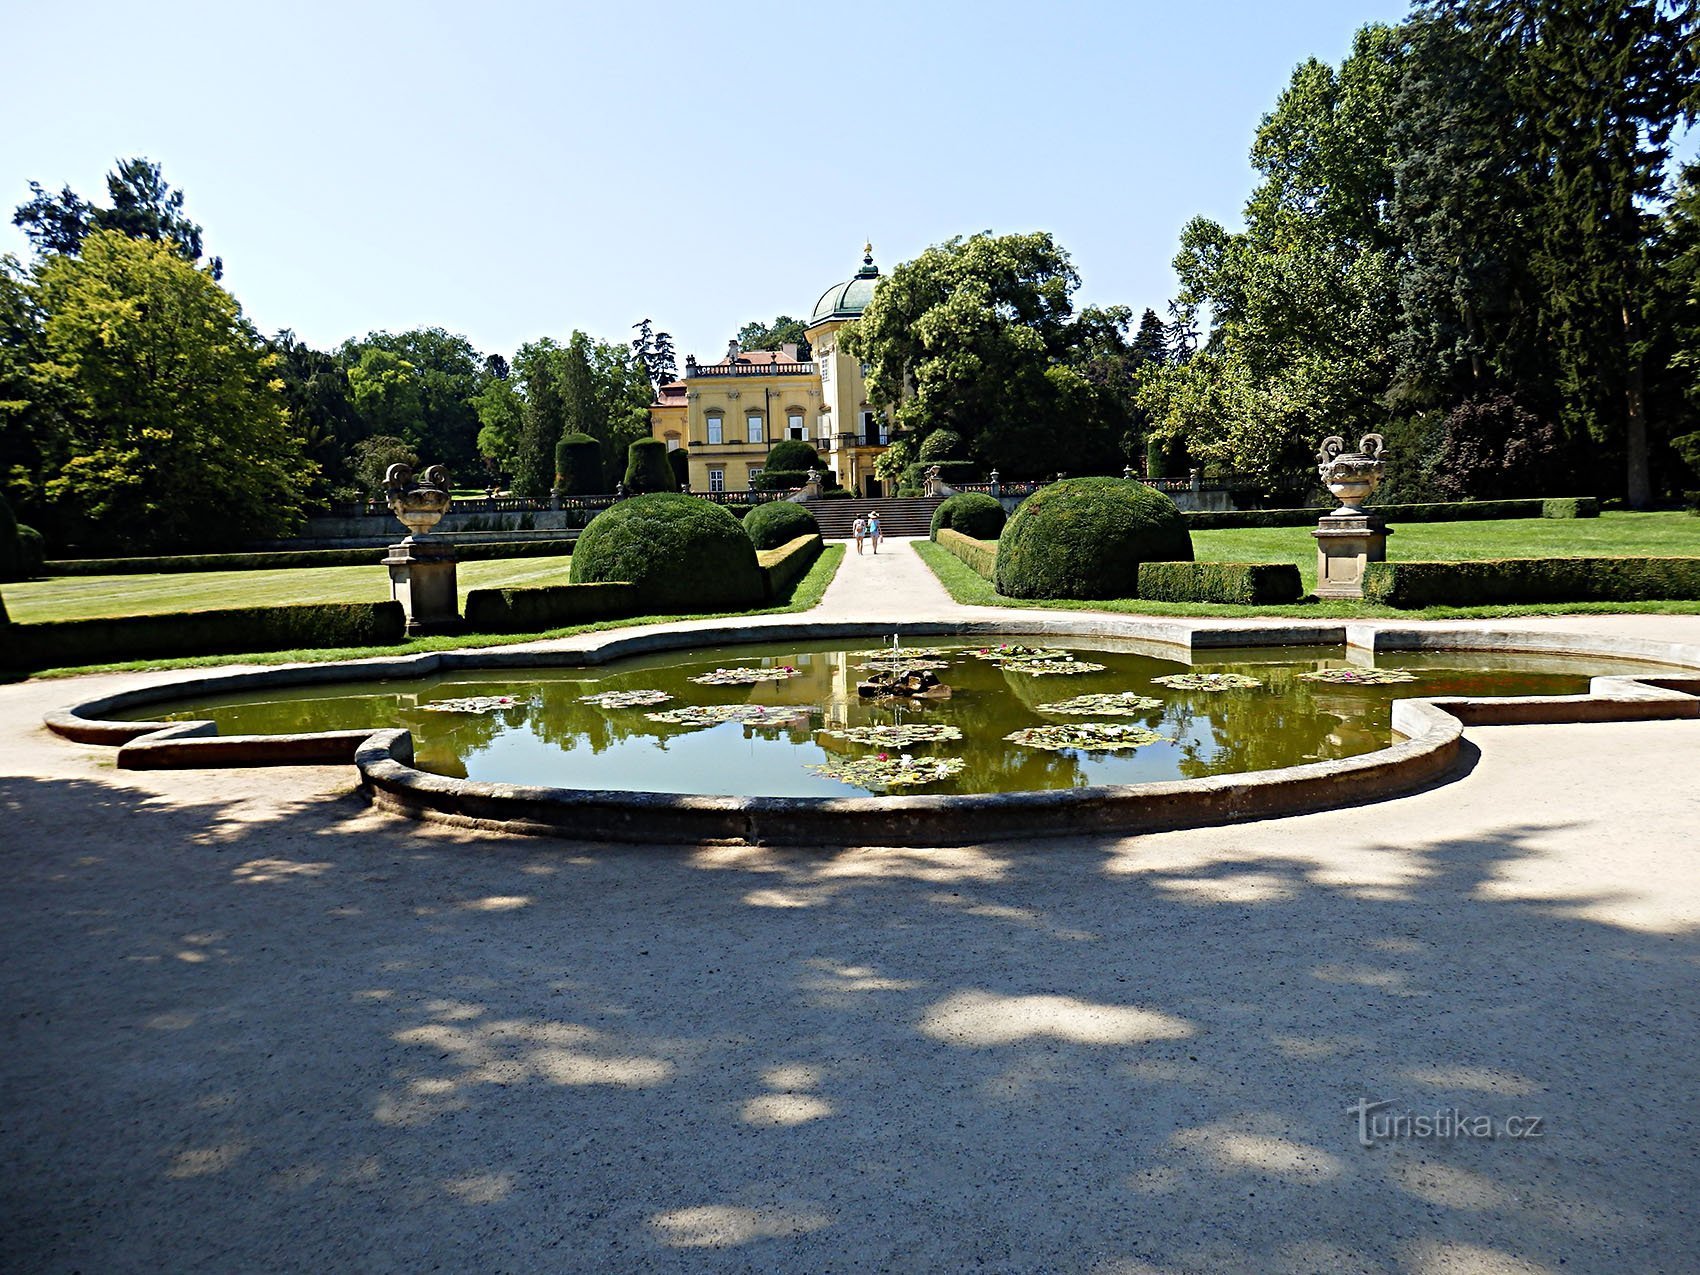 područje parka i vrta dvorca u Buchlovicama jedno je od najvažnijih i najljepših